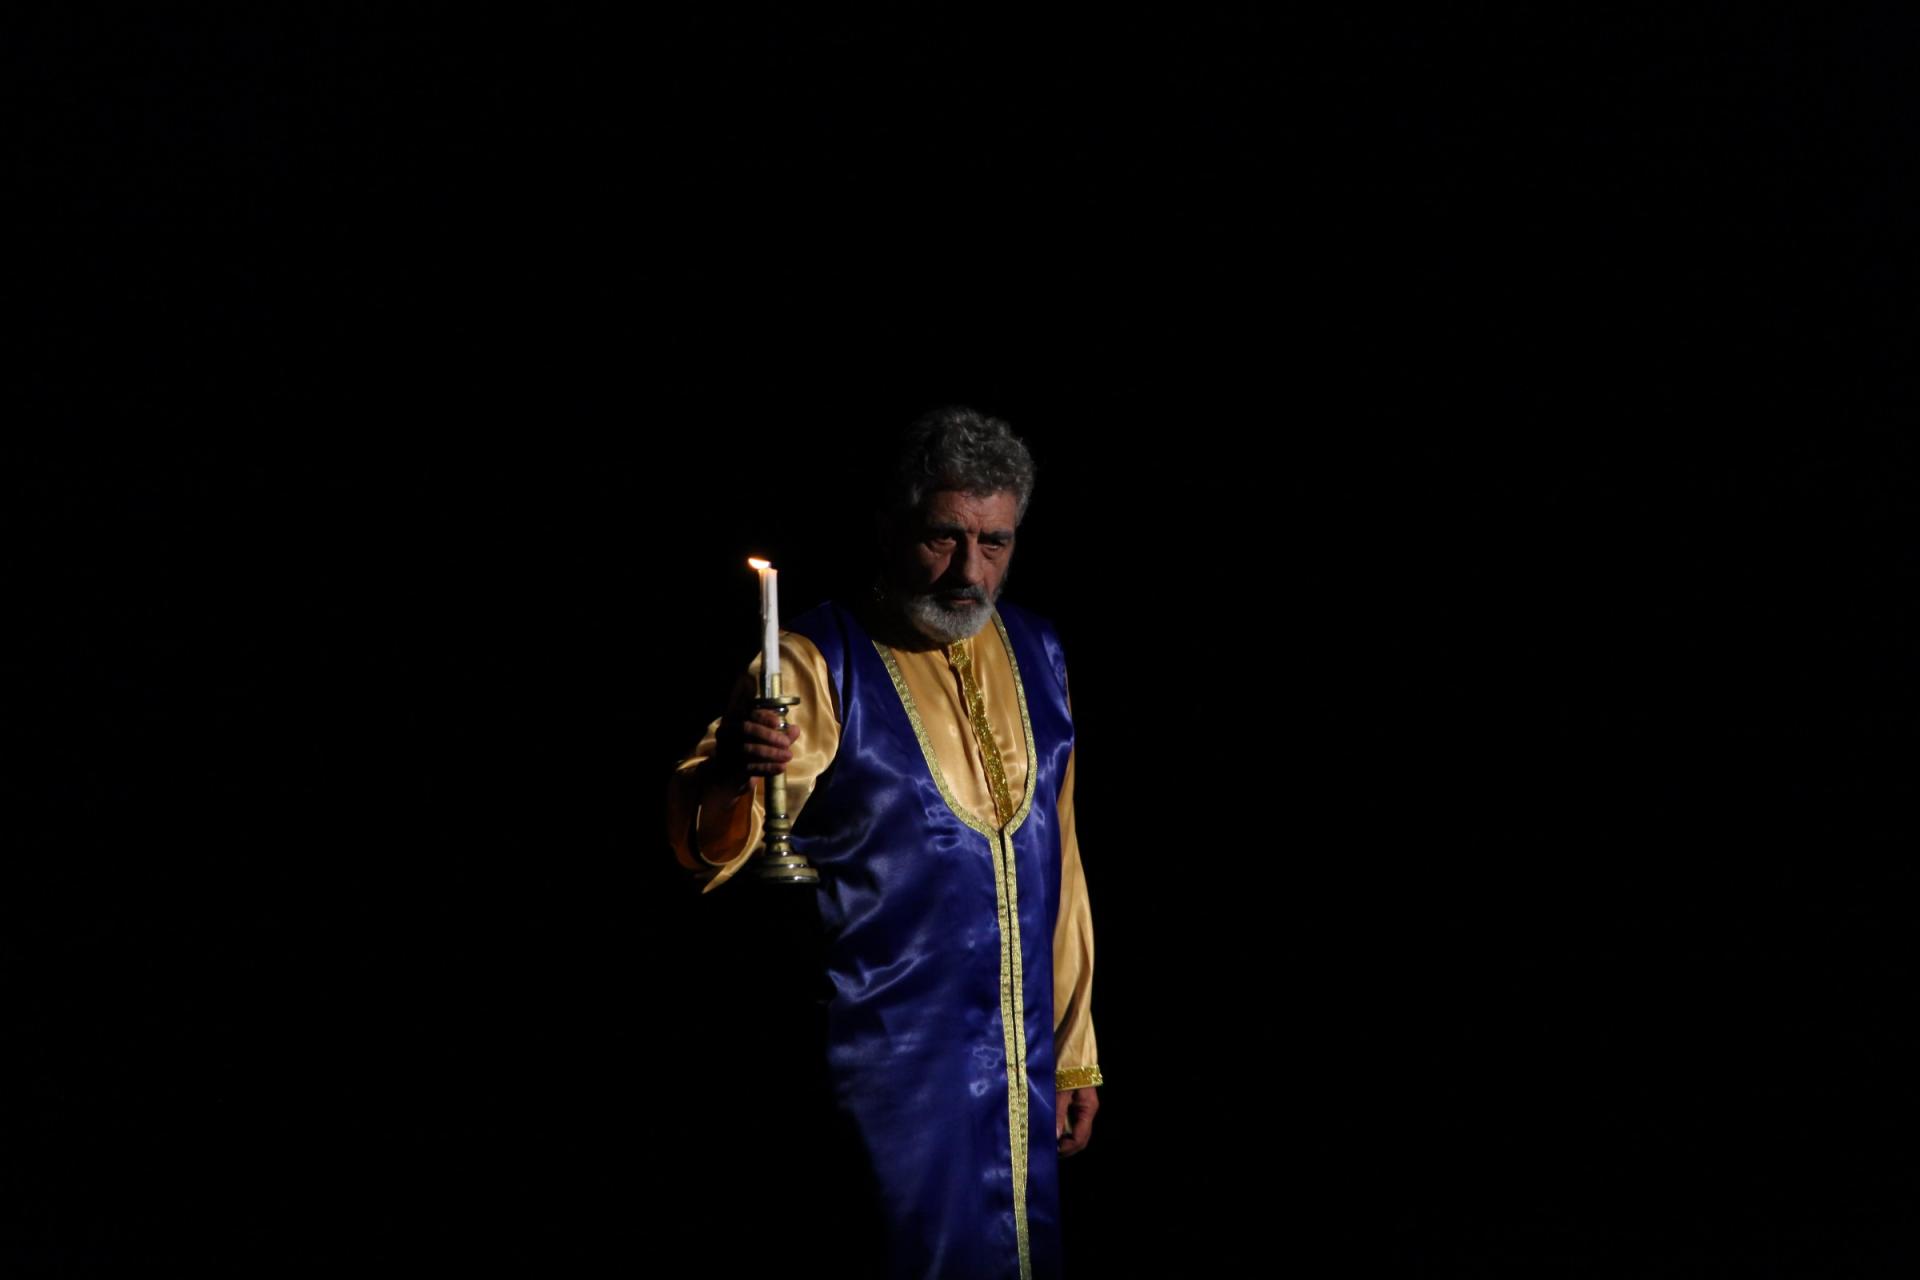 II Şəki Beynəlxalq Teatr Festivalı uğurla başa çatıb (FOTO)